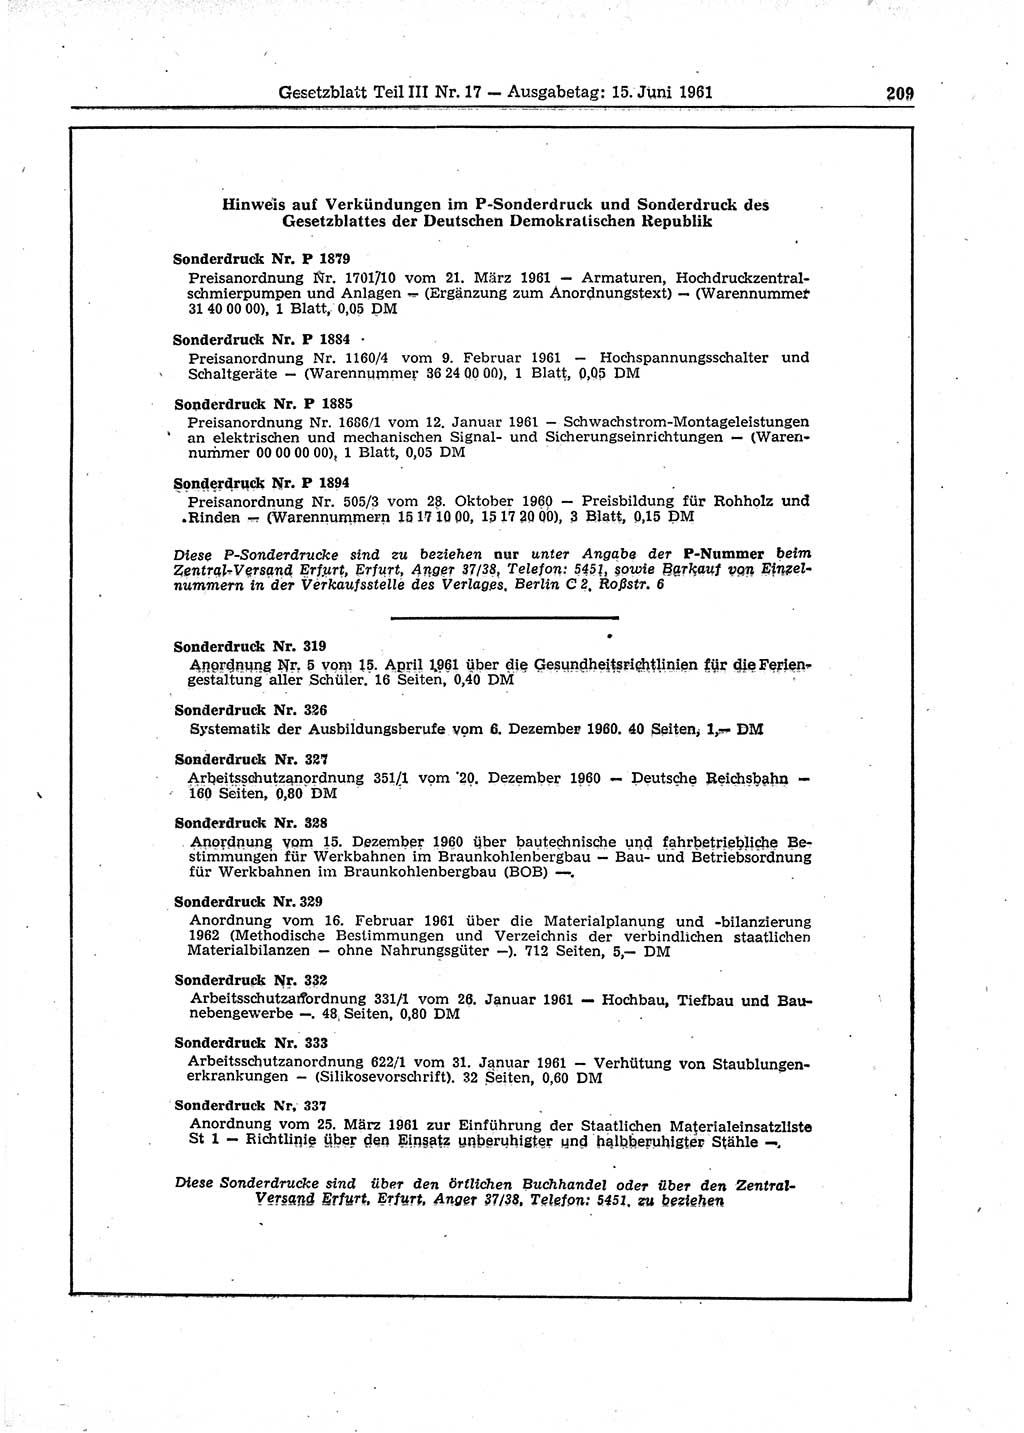 Gesetzblatt (GBl.) der Deutschen Demokratischen Republik (DDR) Teil ⅠⅠⅠ 1961, Seite 209 (GBl. DDR ⅠⅠⅠ 1961, S. 209)